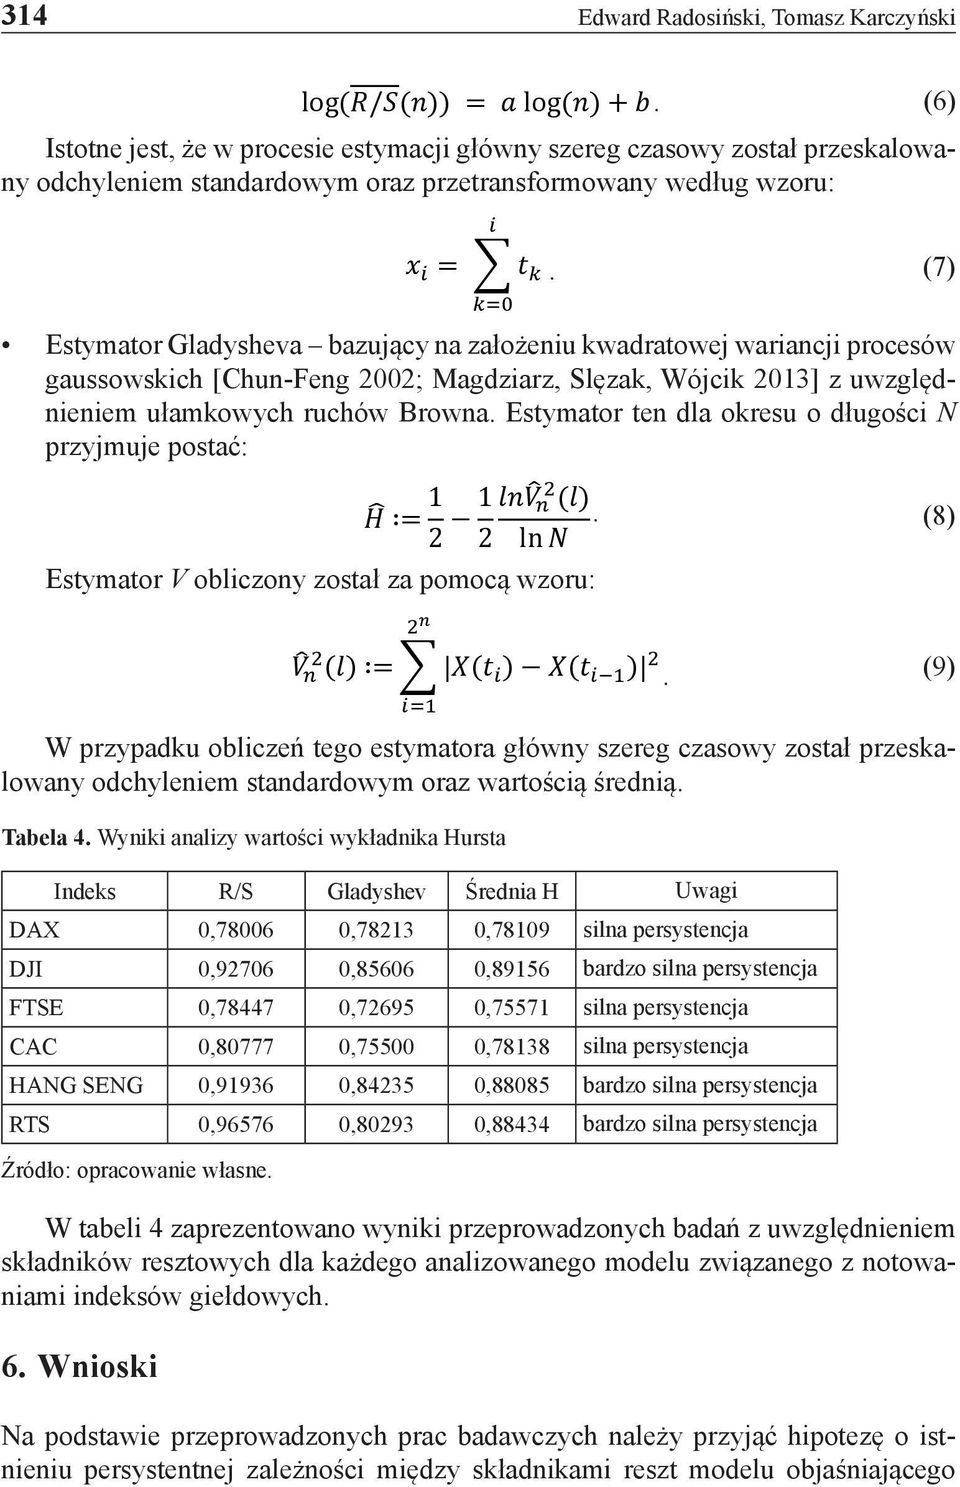 (7) kk=0 Estymator Gladysheva bazujący na założeniu kwadratowej wariancji procesów gaussowskich [Chun-Feng 2002; Magdziarz, Slęzak, Wójcik 2013] z uwzględnieniem ułamkowych ruchów Browna.